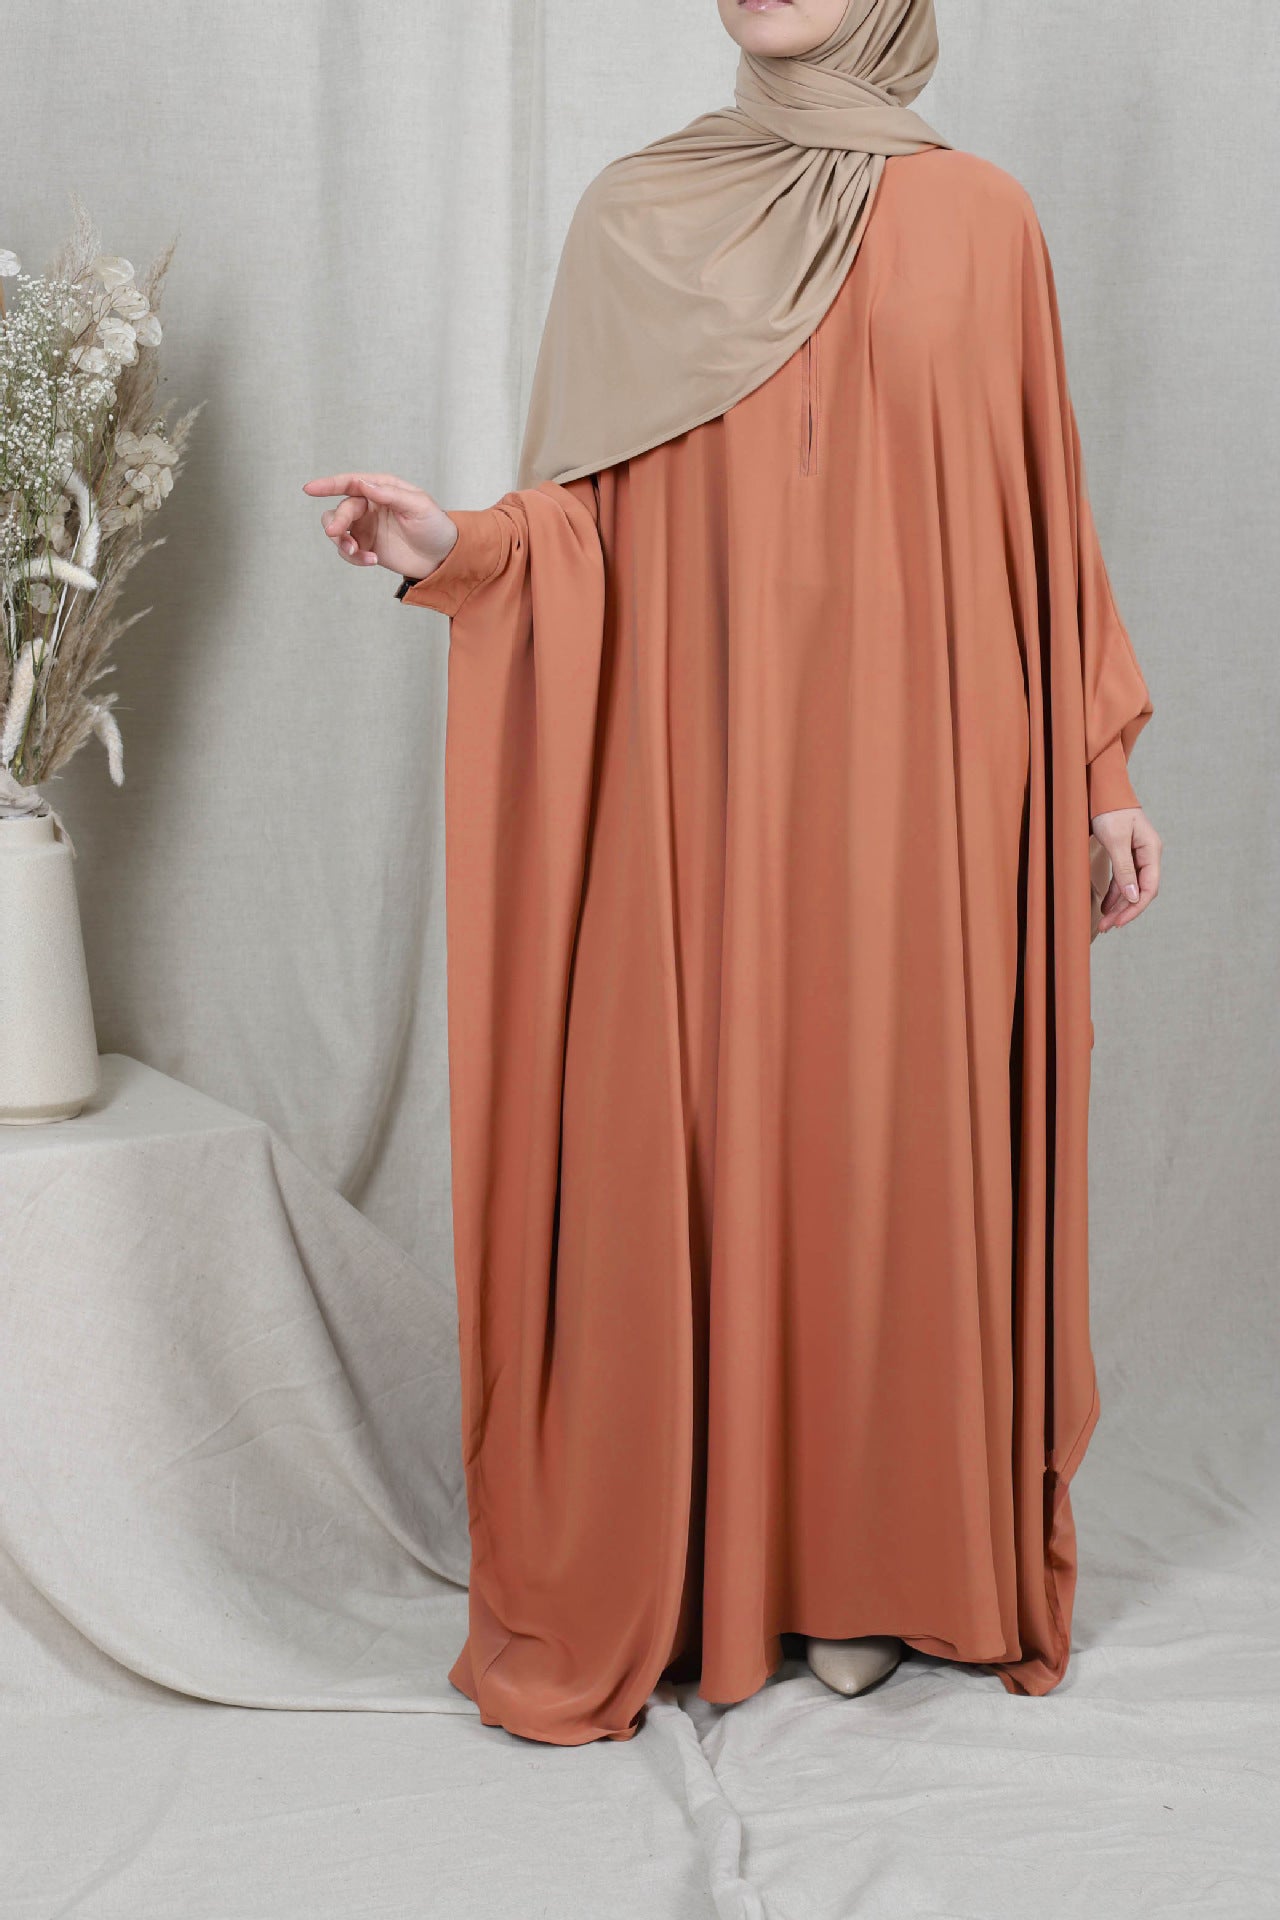 Eid Mit Kapuze Muslimische Frauen Hijab Kleid Gebet Kleidungsstück Jilbab Abaya Lange Khimar Volle Abdeckung Ramadan Kleid Abayas Islamische Kleidung niqab